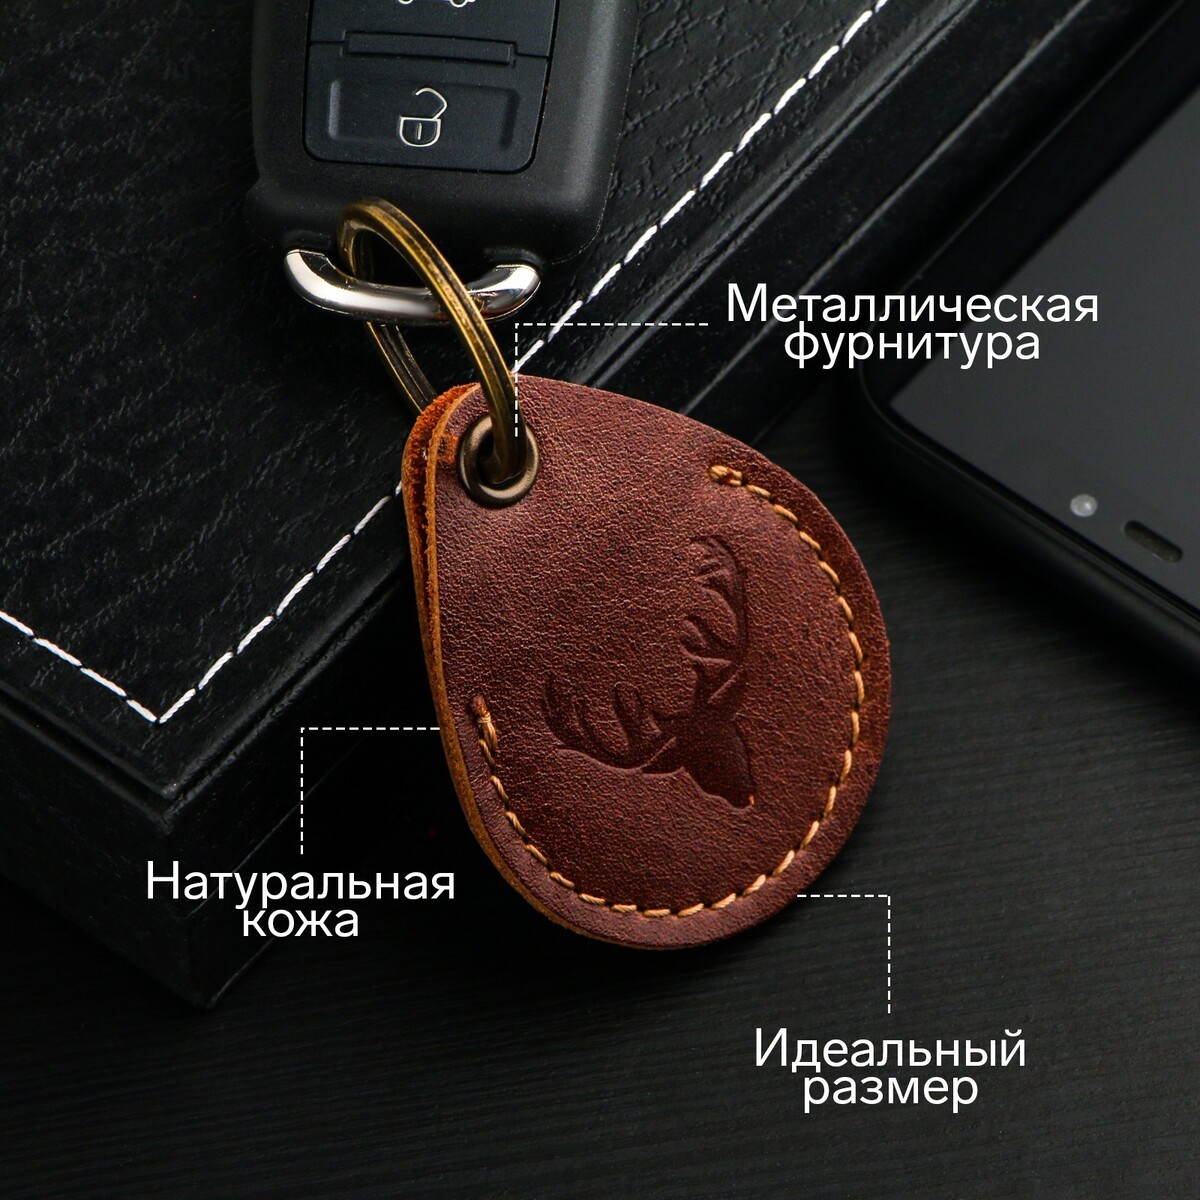 Брелок для автомобильного ключа, метка, капля, натуральная кожа, коричневый, олень брелок для автомобильного ключа наручники натуральная кожа